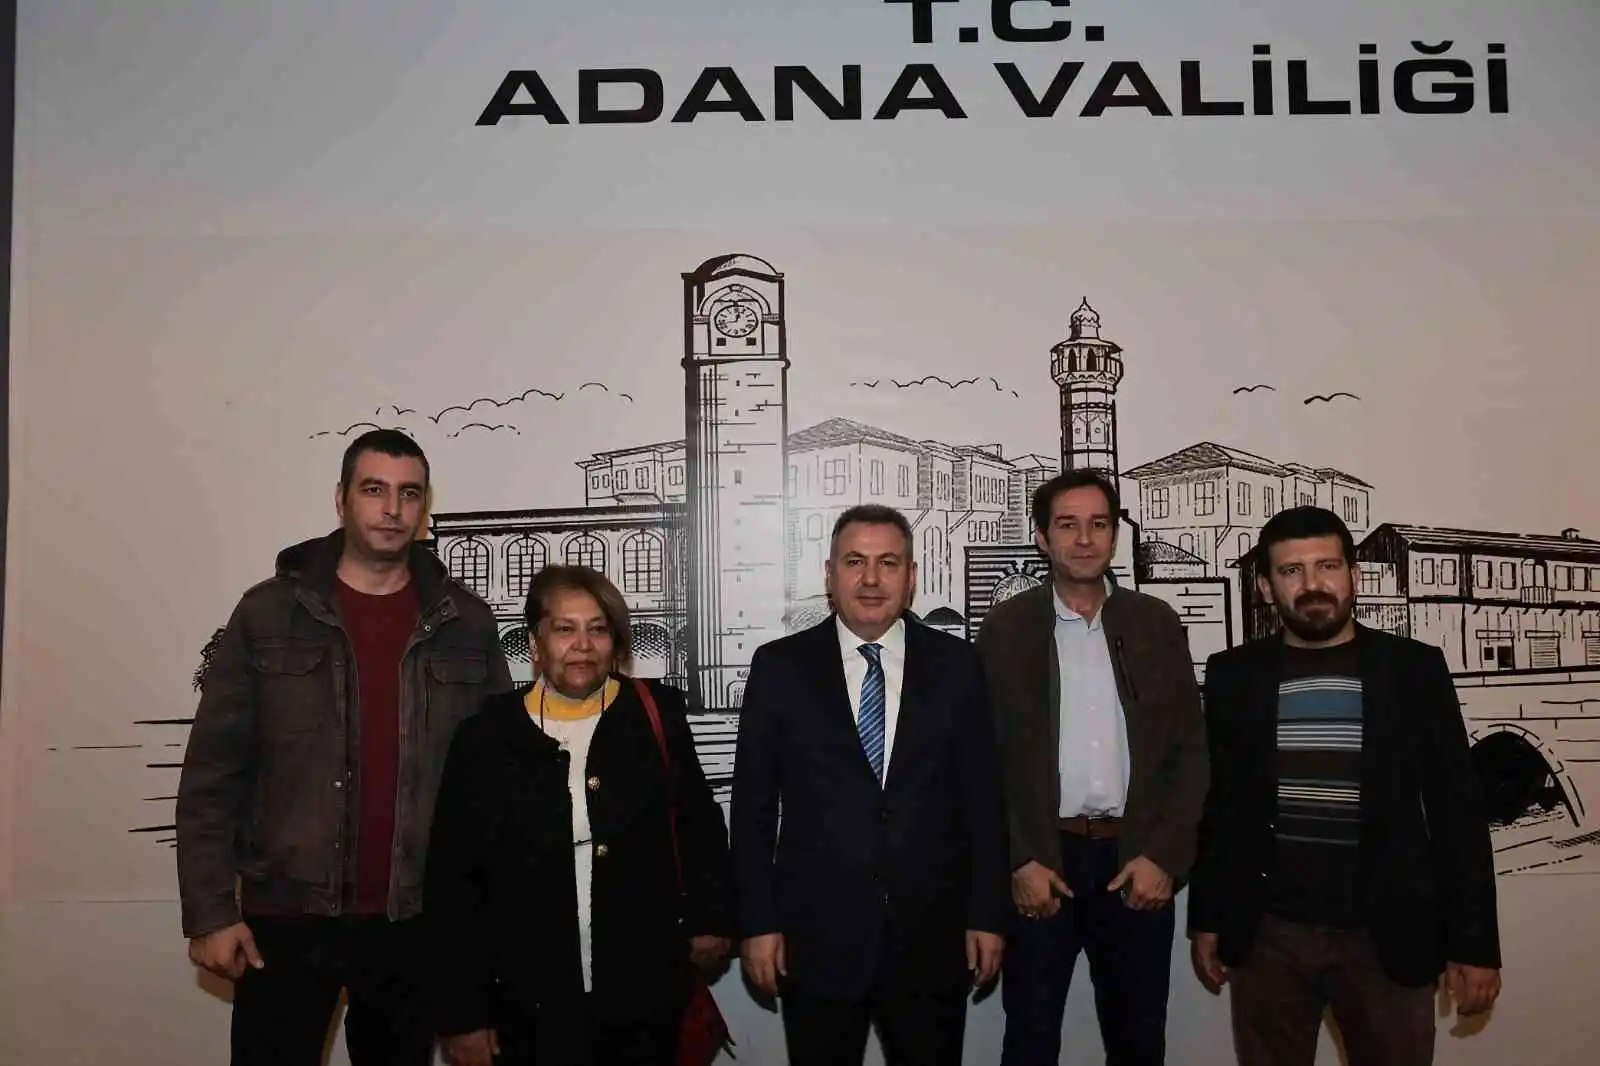 Adana Valisi Elban: “Gazeteciler zor şartlarda doğru bilgiyi vermek için mücadele ediyor”
